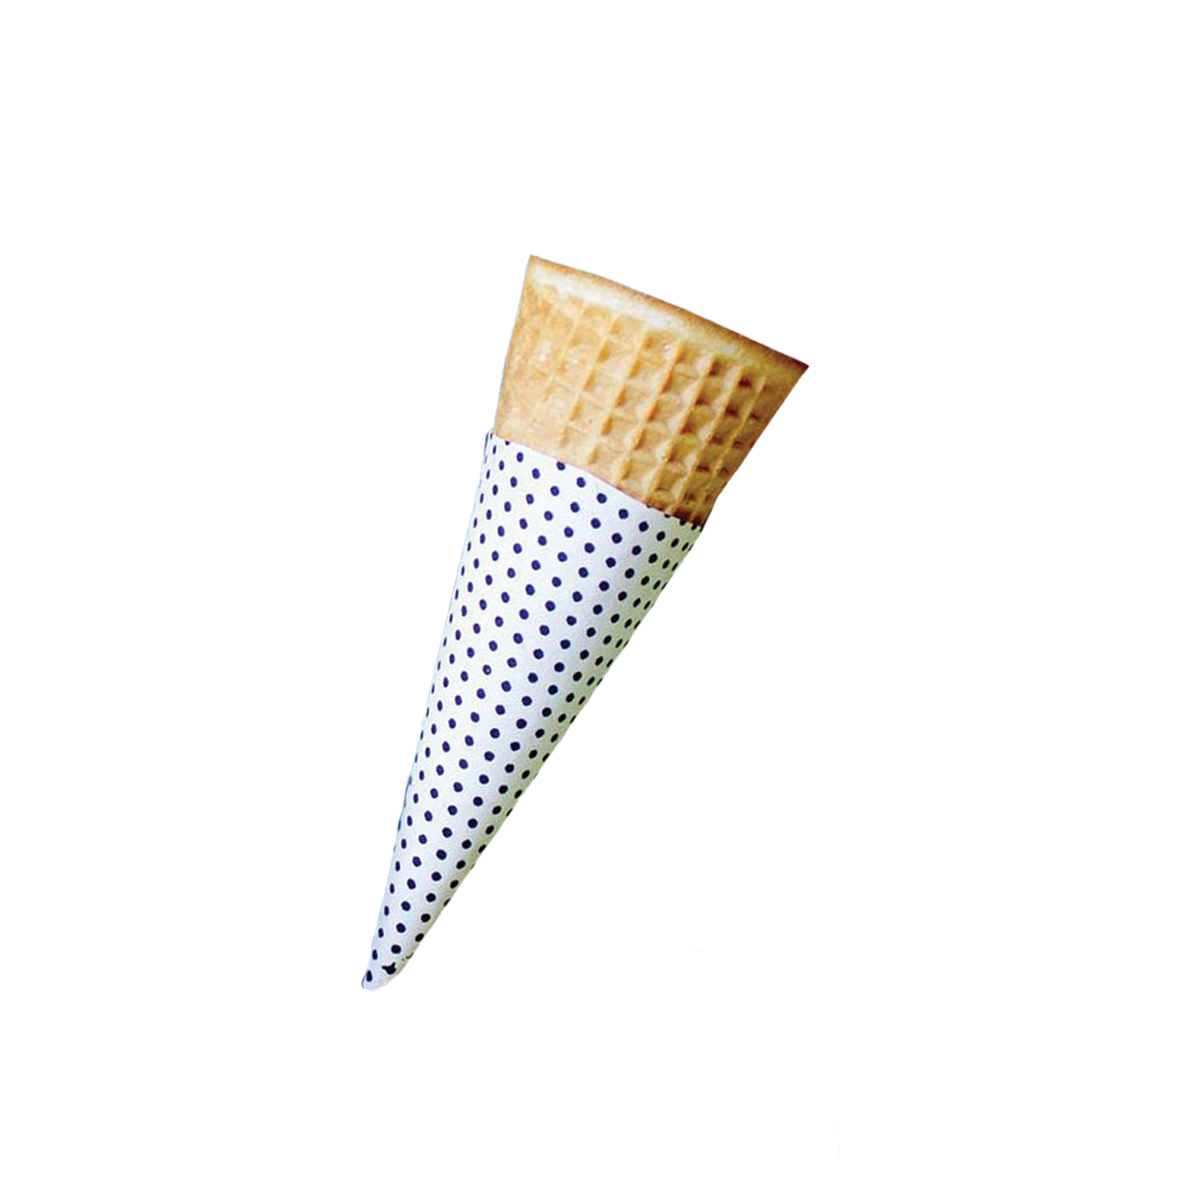 custom Cone Sleeve packaging